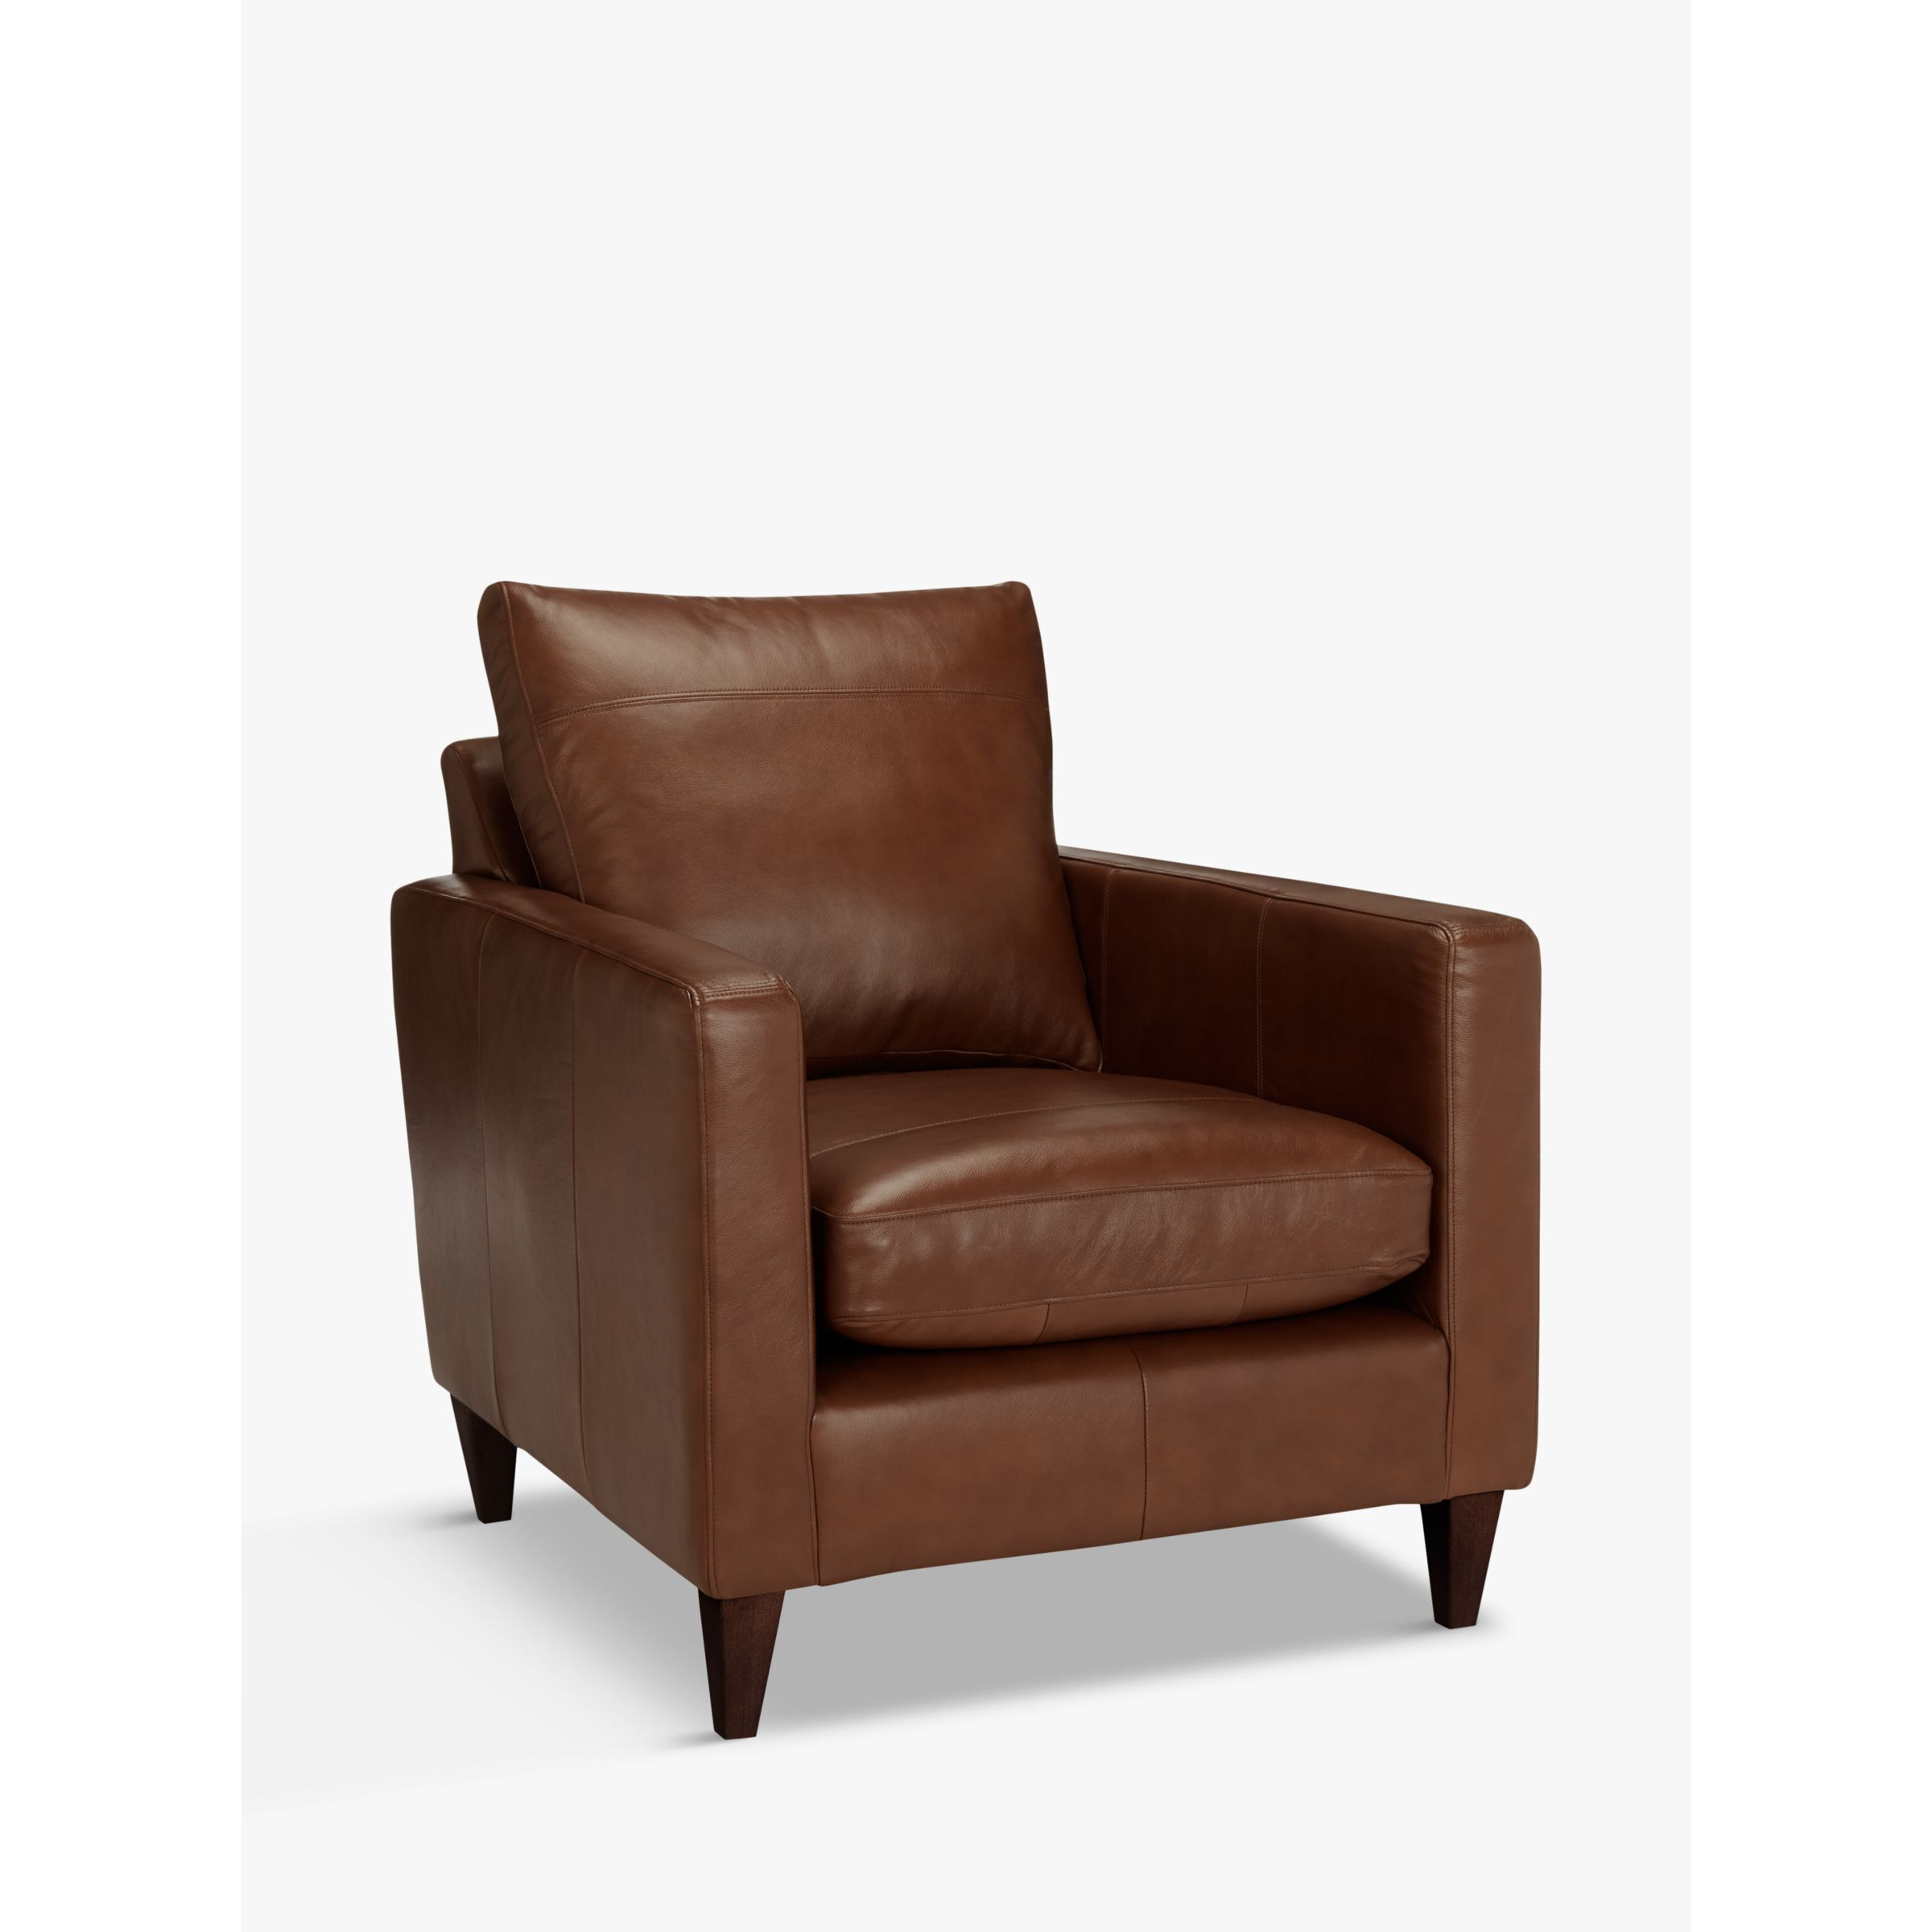 John Lewis Bailey Leather Armchair, Dark Leg - image 1